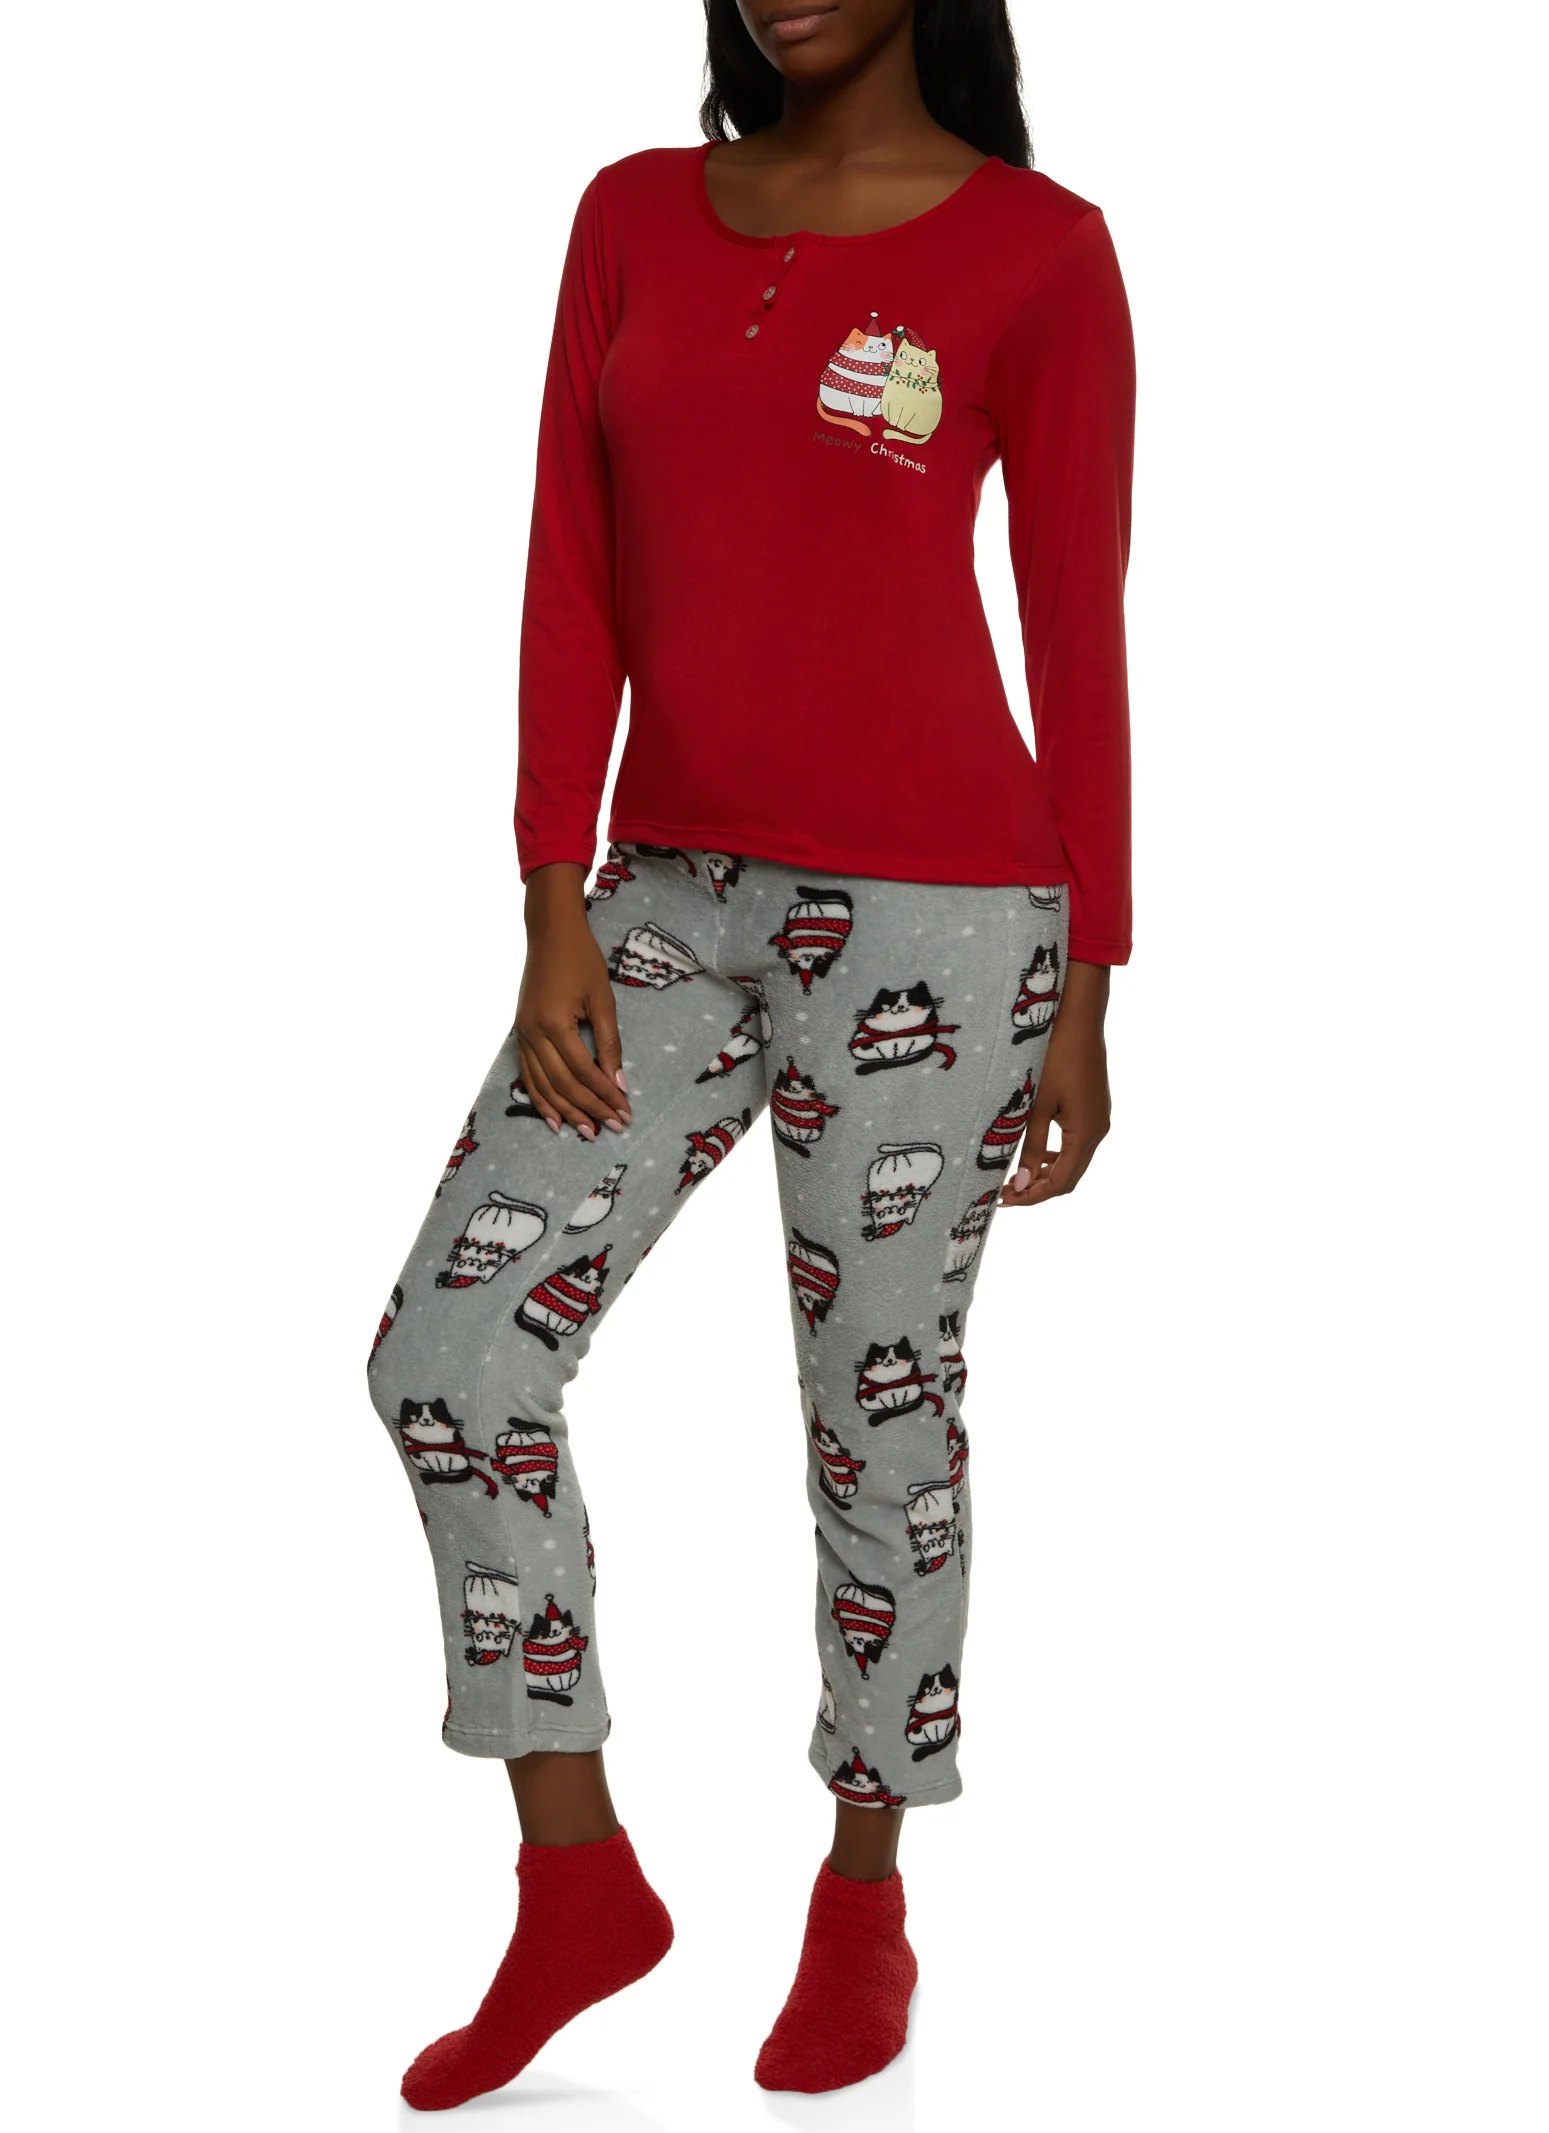 Meowy Christmas Pajama Top and Pants Set - Red